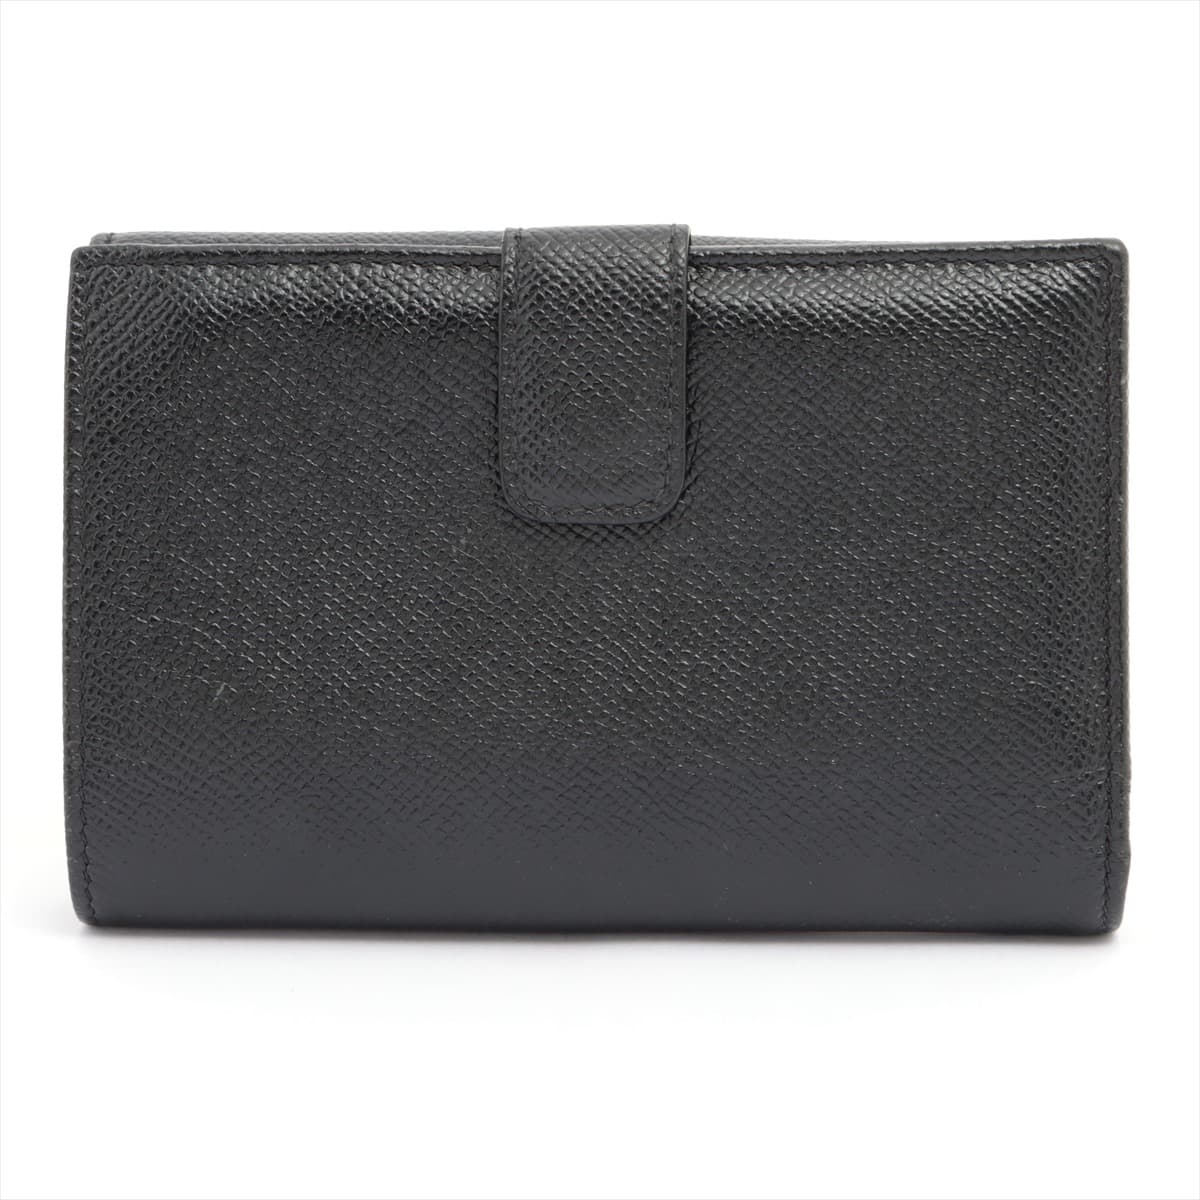 Bvlgari Bvlgari Bvlgari Leather Wallet Black